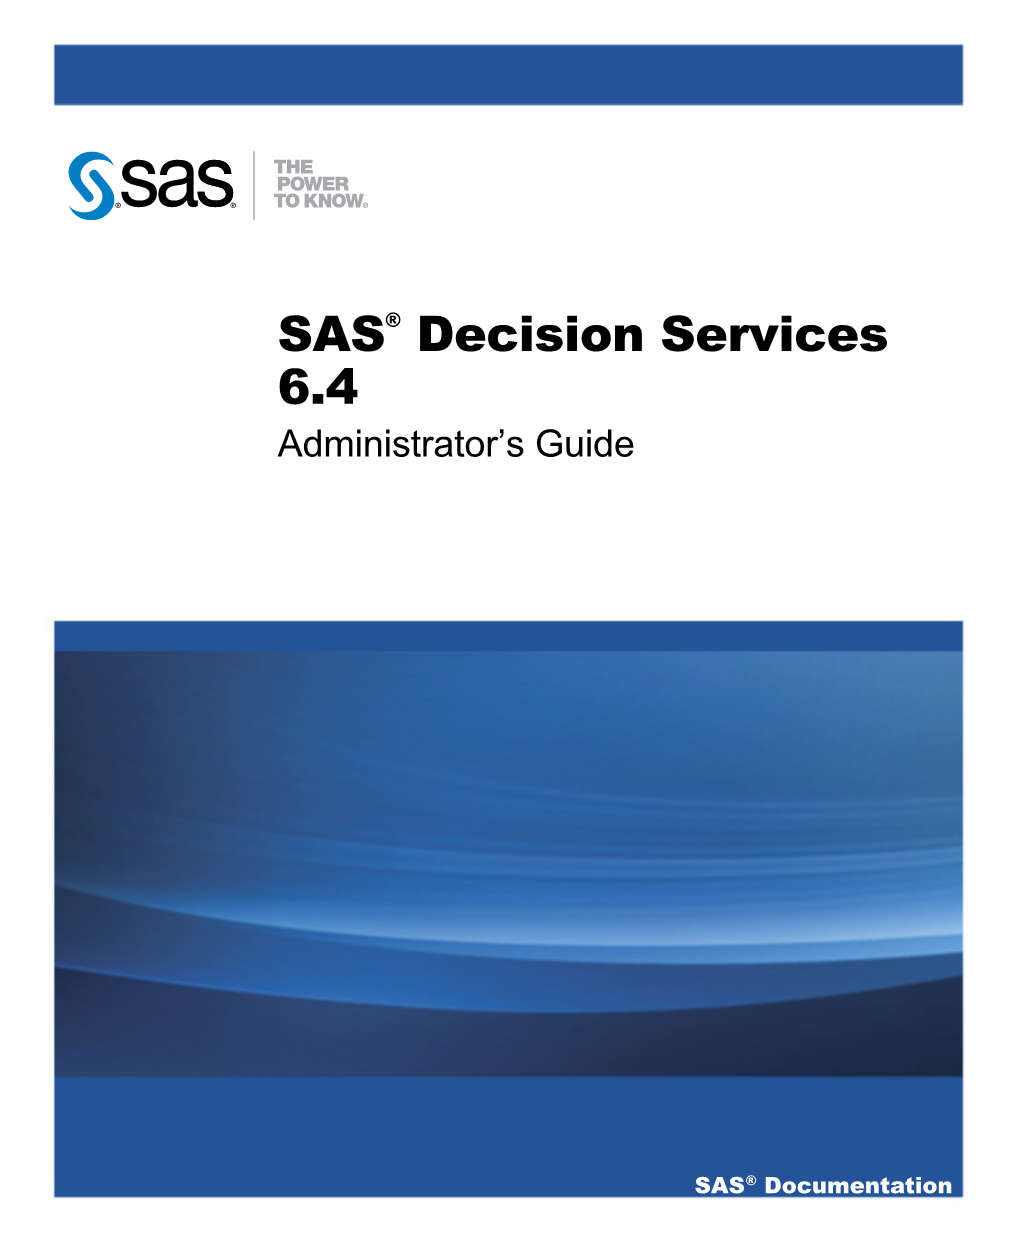 SAS Decision Services 6.4